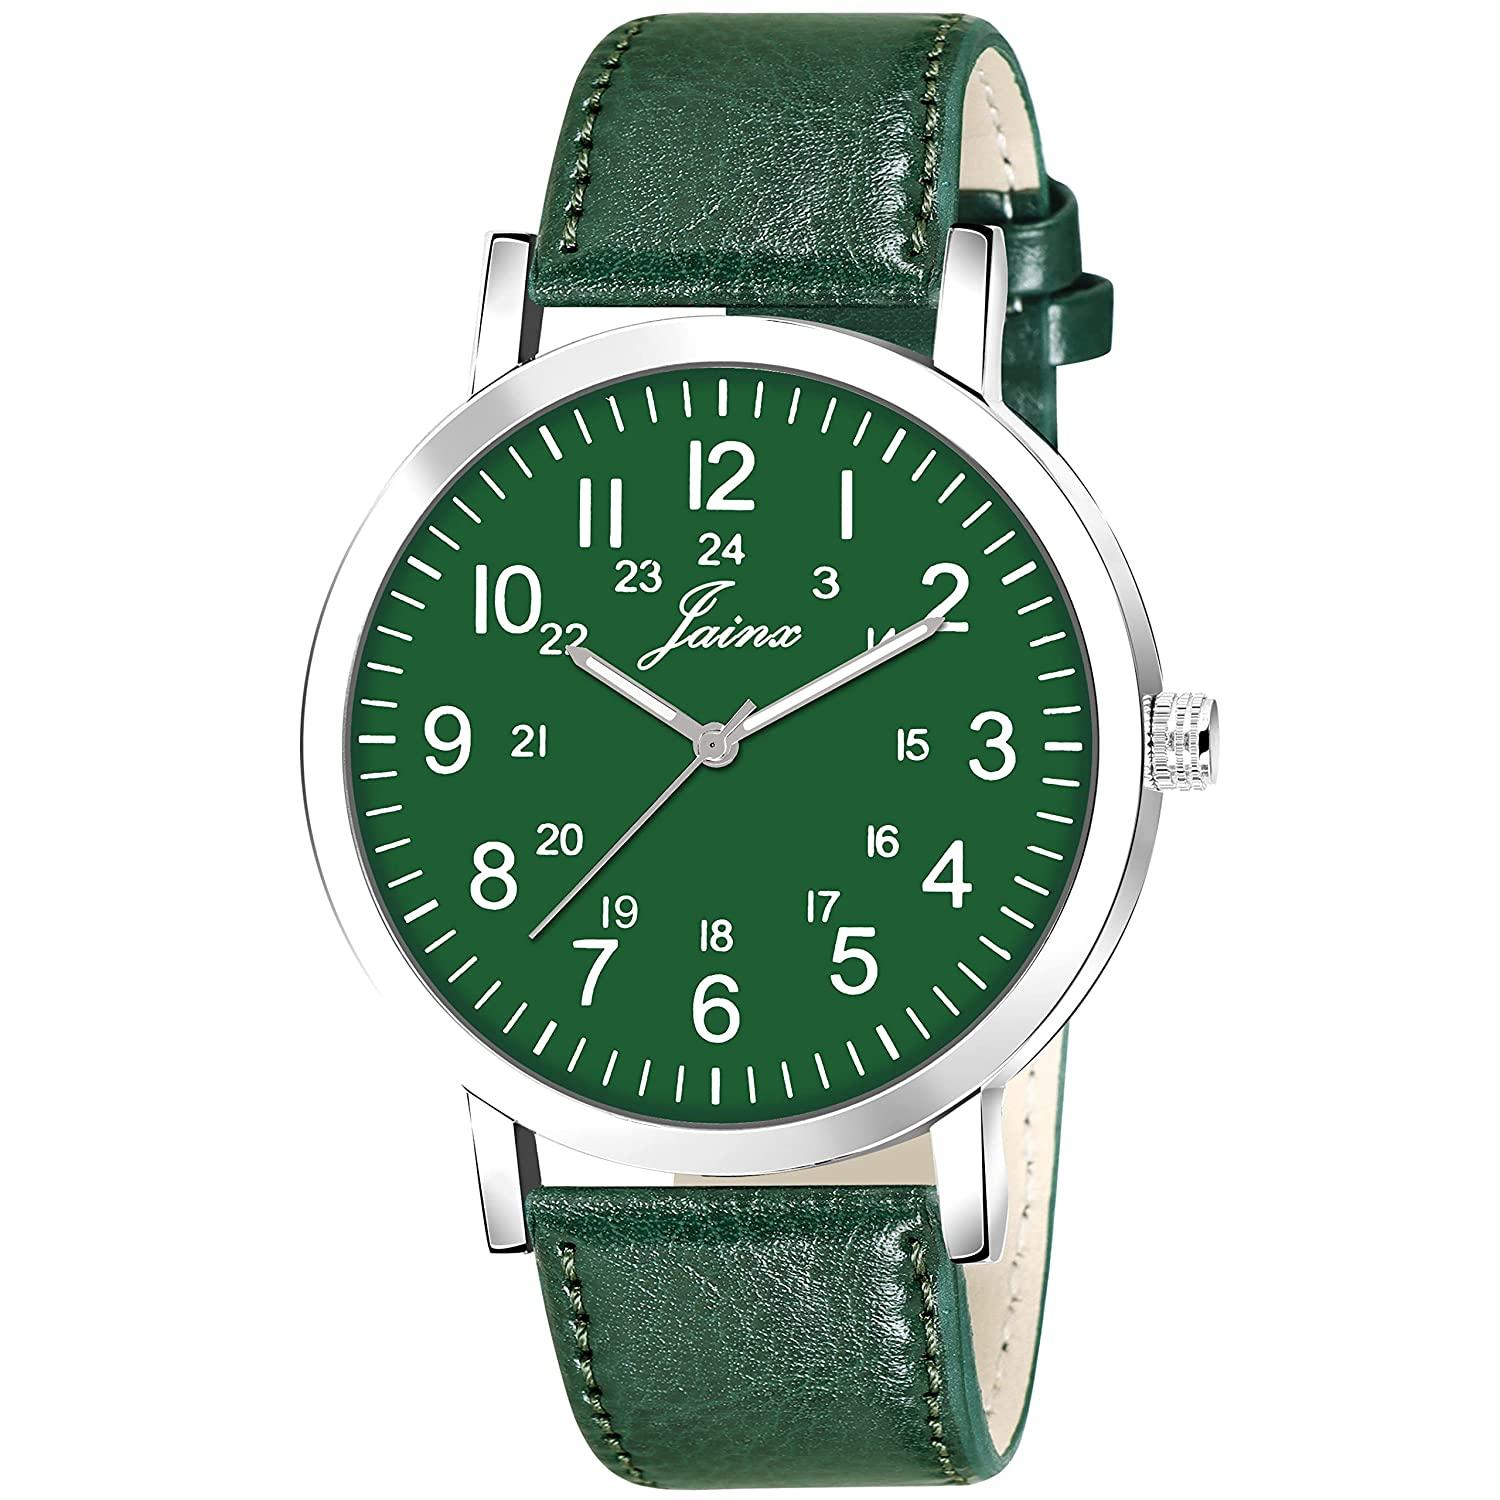 Men's Green Leather Strap Analogue Watch - Jainx JM7143 - Jainx Store